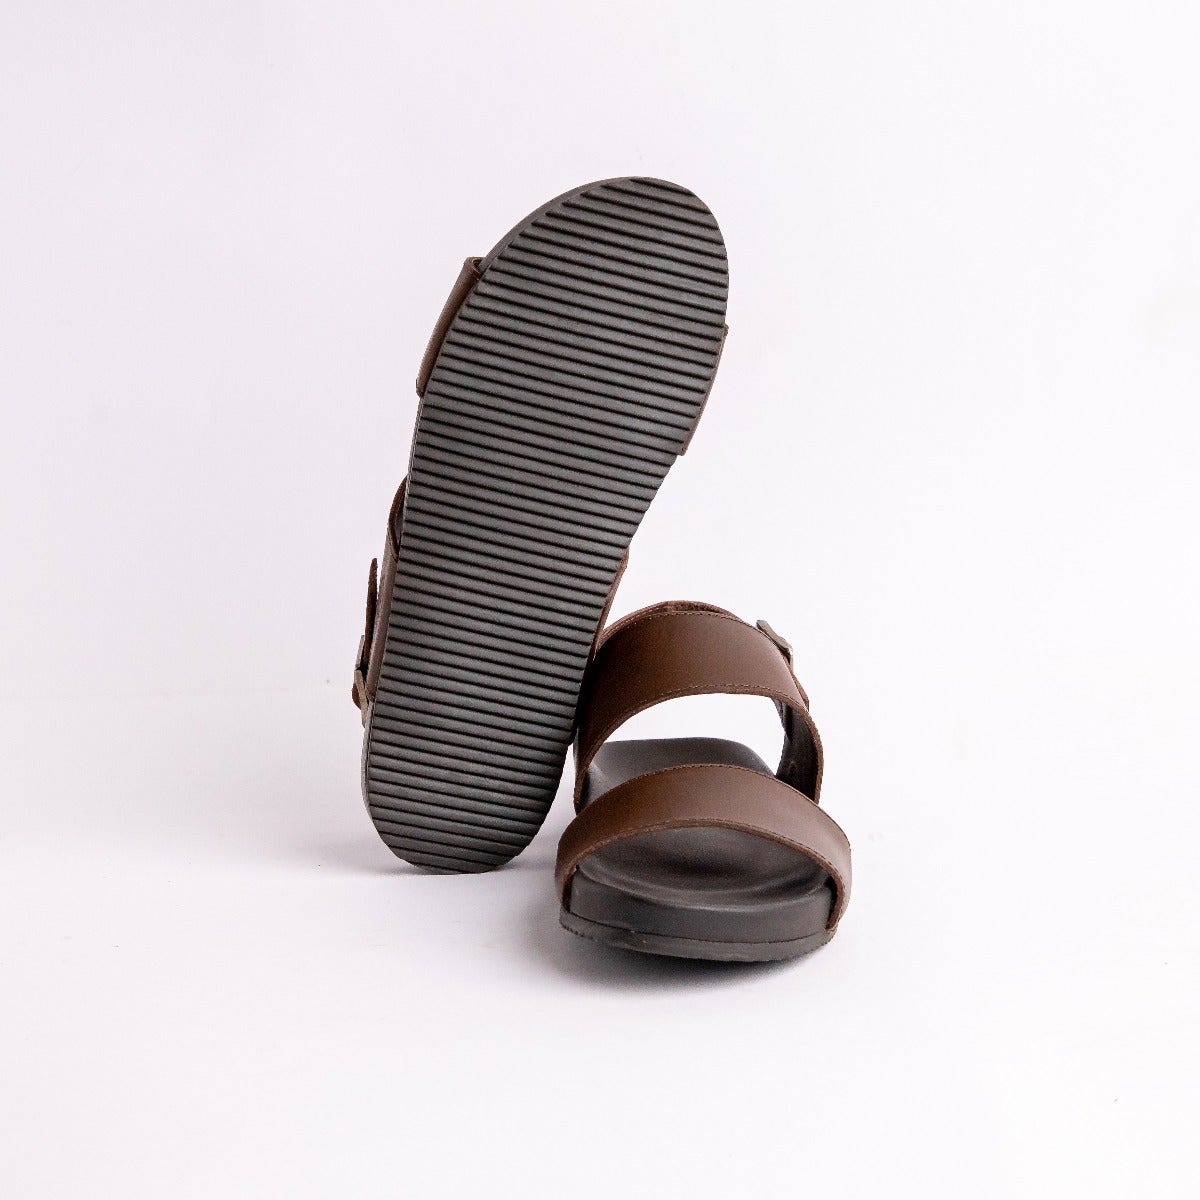 Hiapo - Rum / Dark Wood Men's Leather Beach Sandals | OluKai